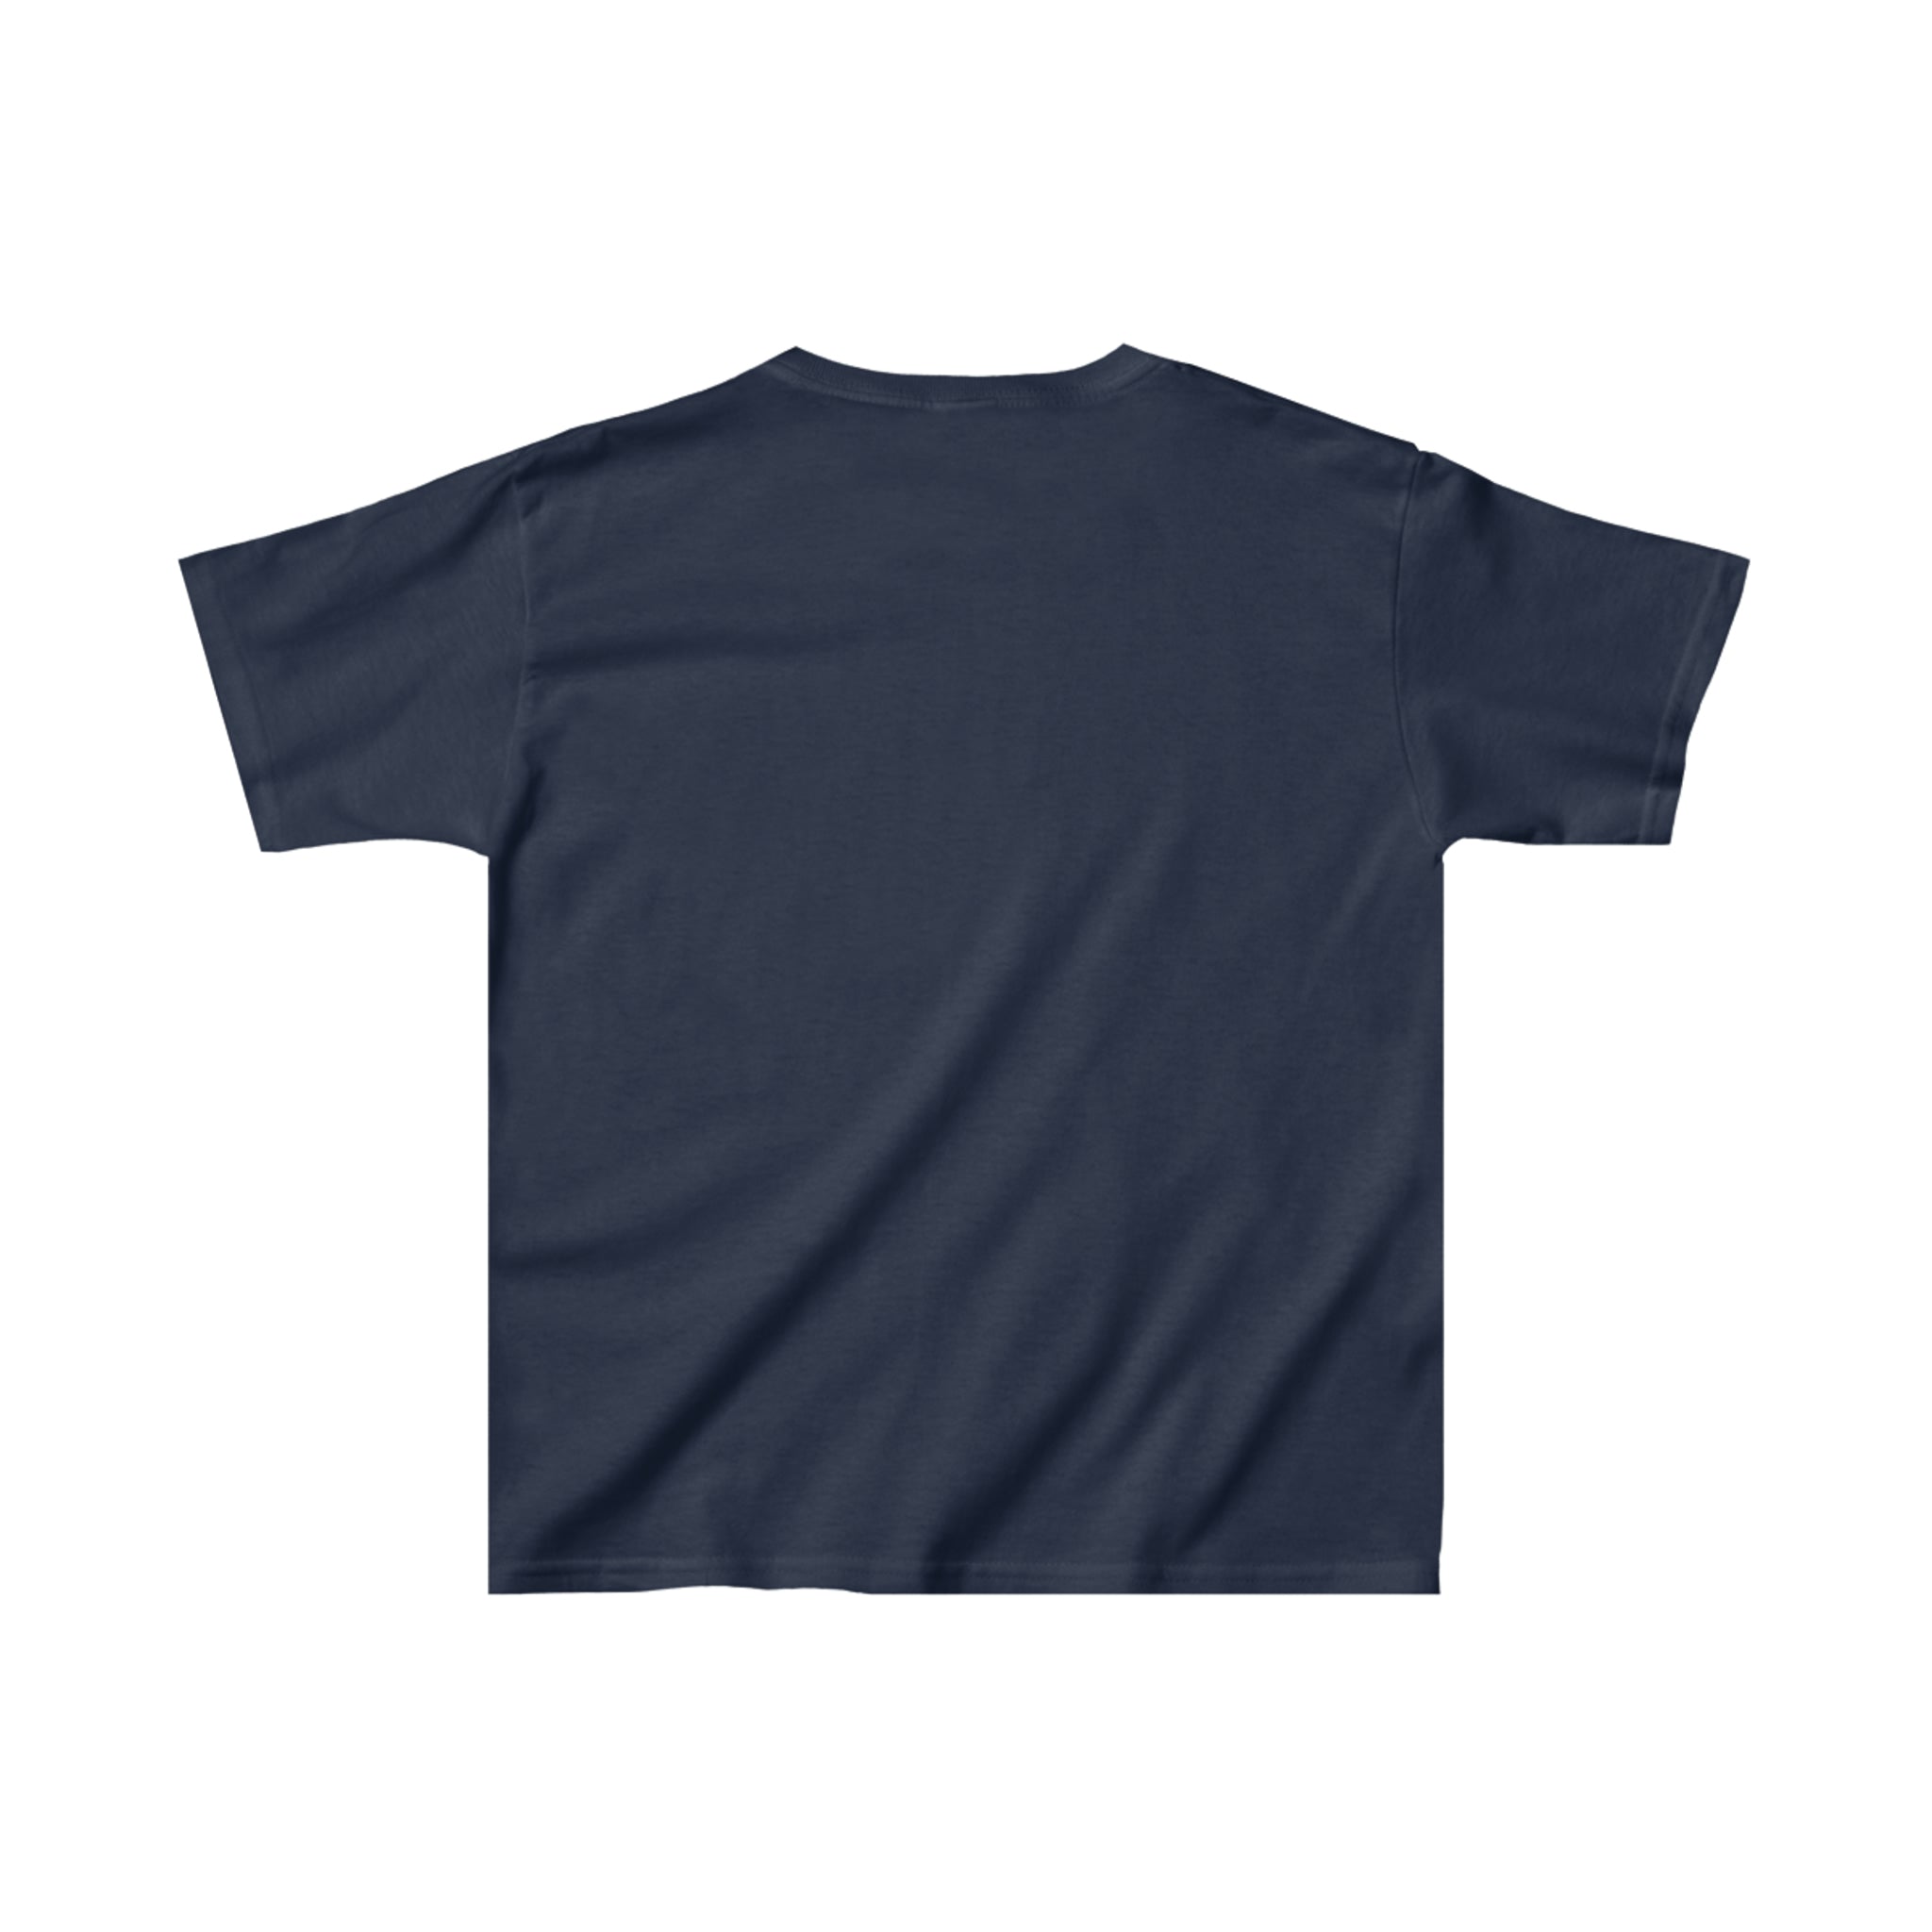 Buffalo Frontiers T-Shirt (Youth)